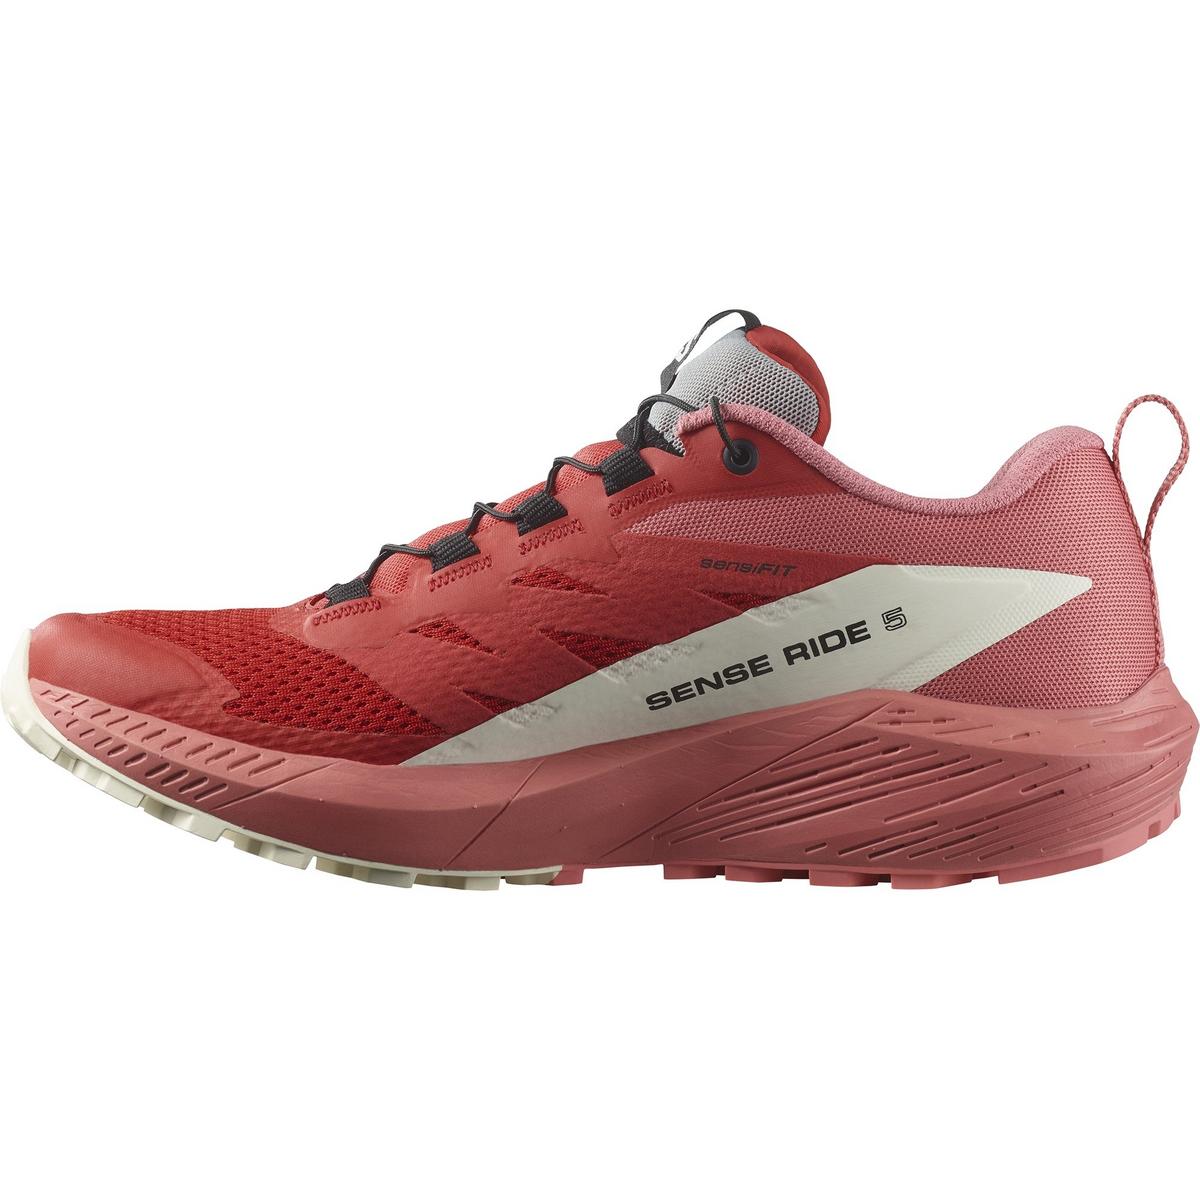 Salomon Women's Sense Ride 5 Running Shoes - Pink